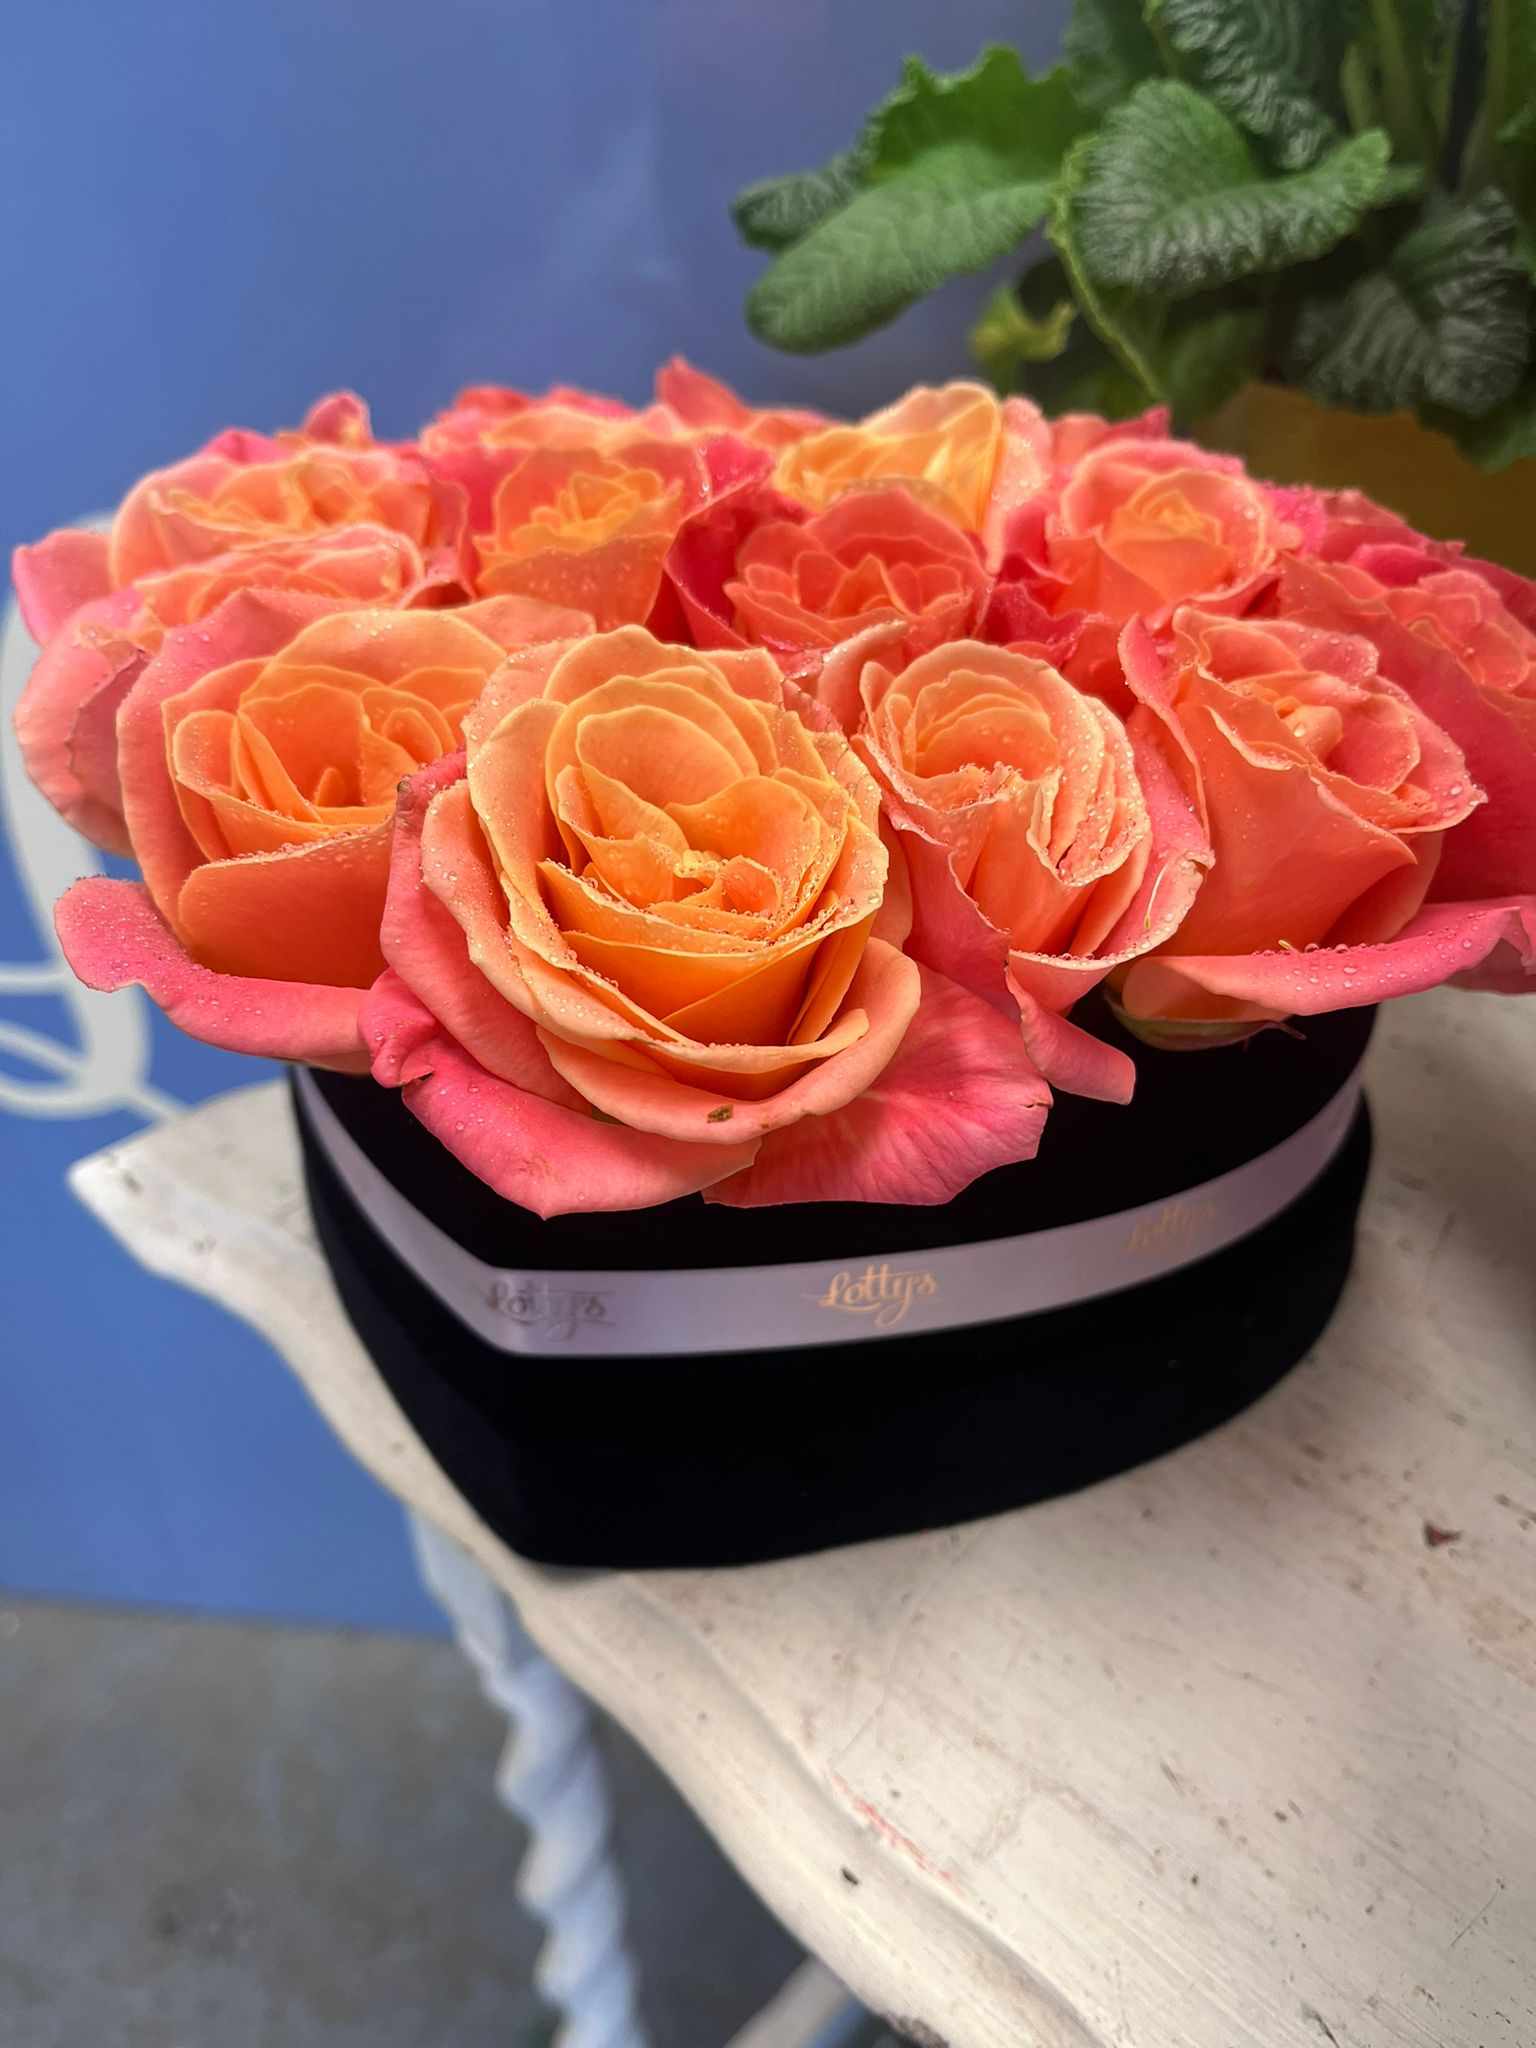 The Ravishing Rose Hatbox